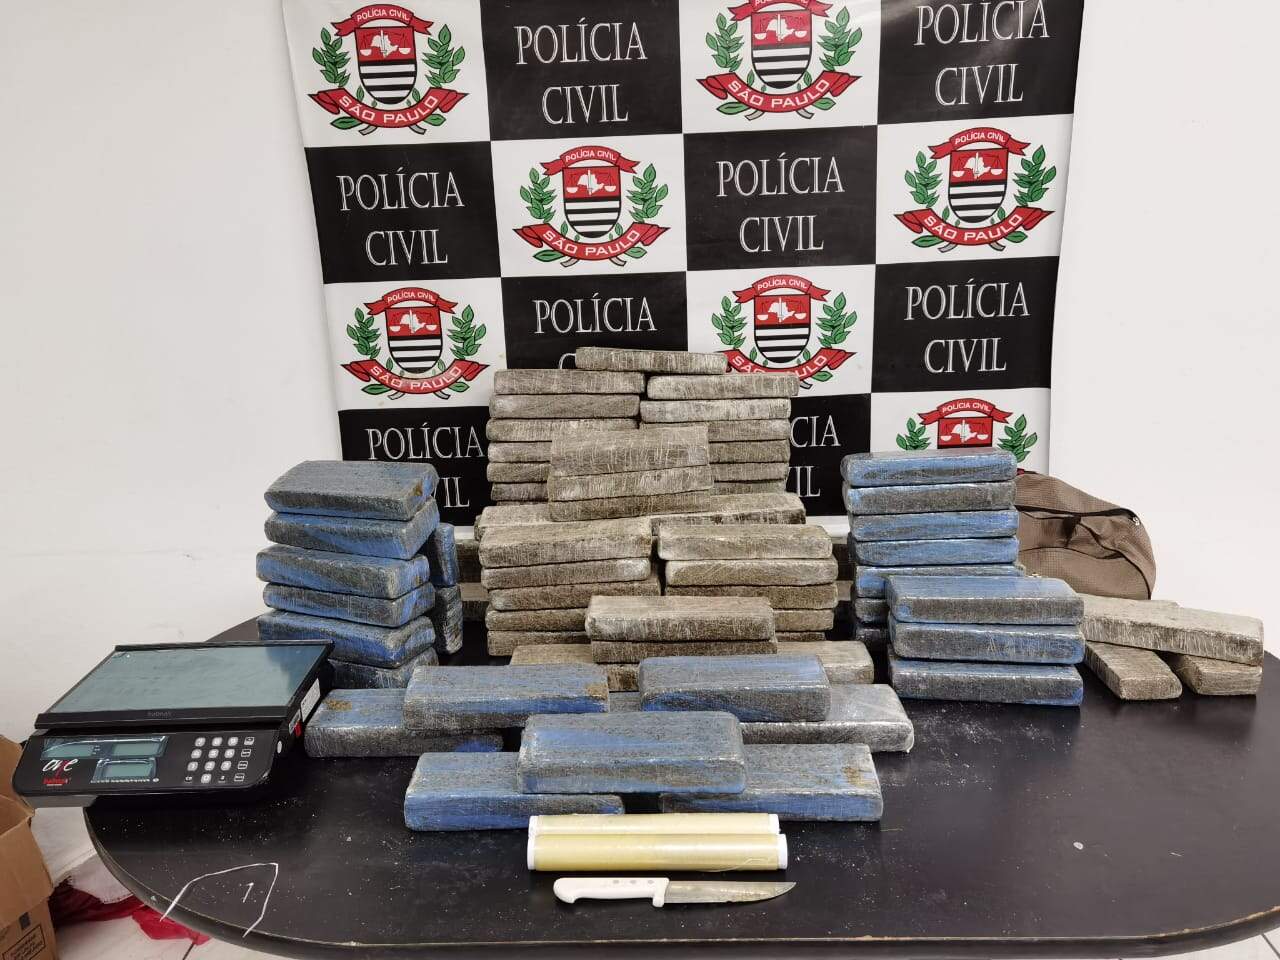 Segundo a polícia, droga abasteceria inúmeros pontos de tráfico na Baixada Santista